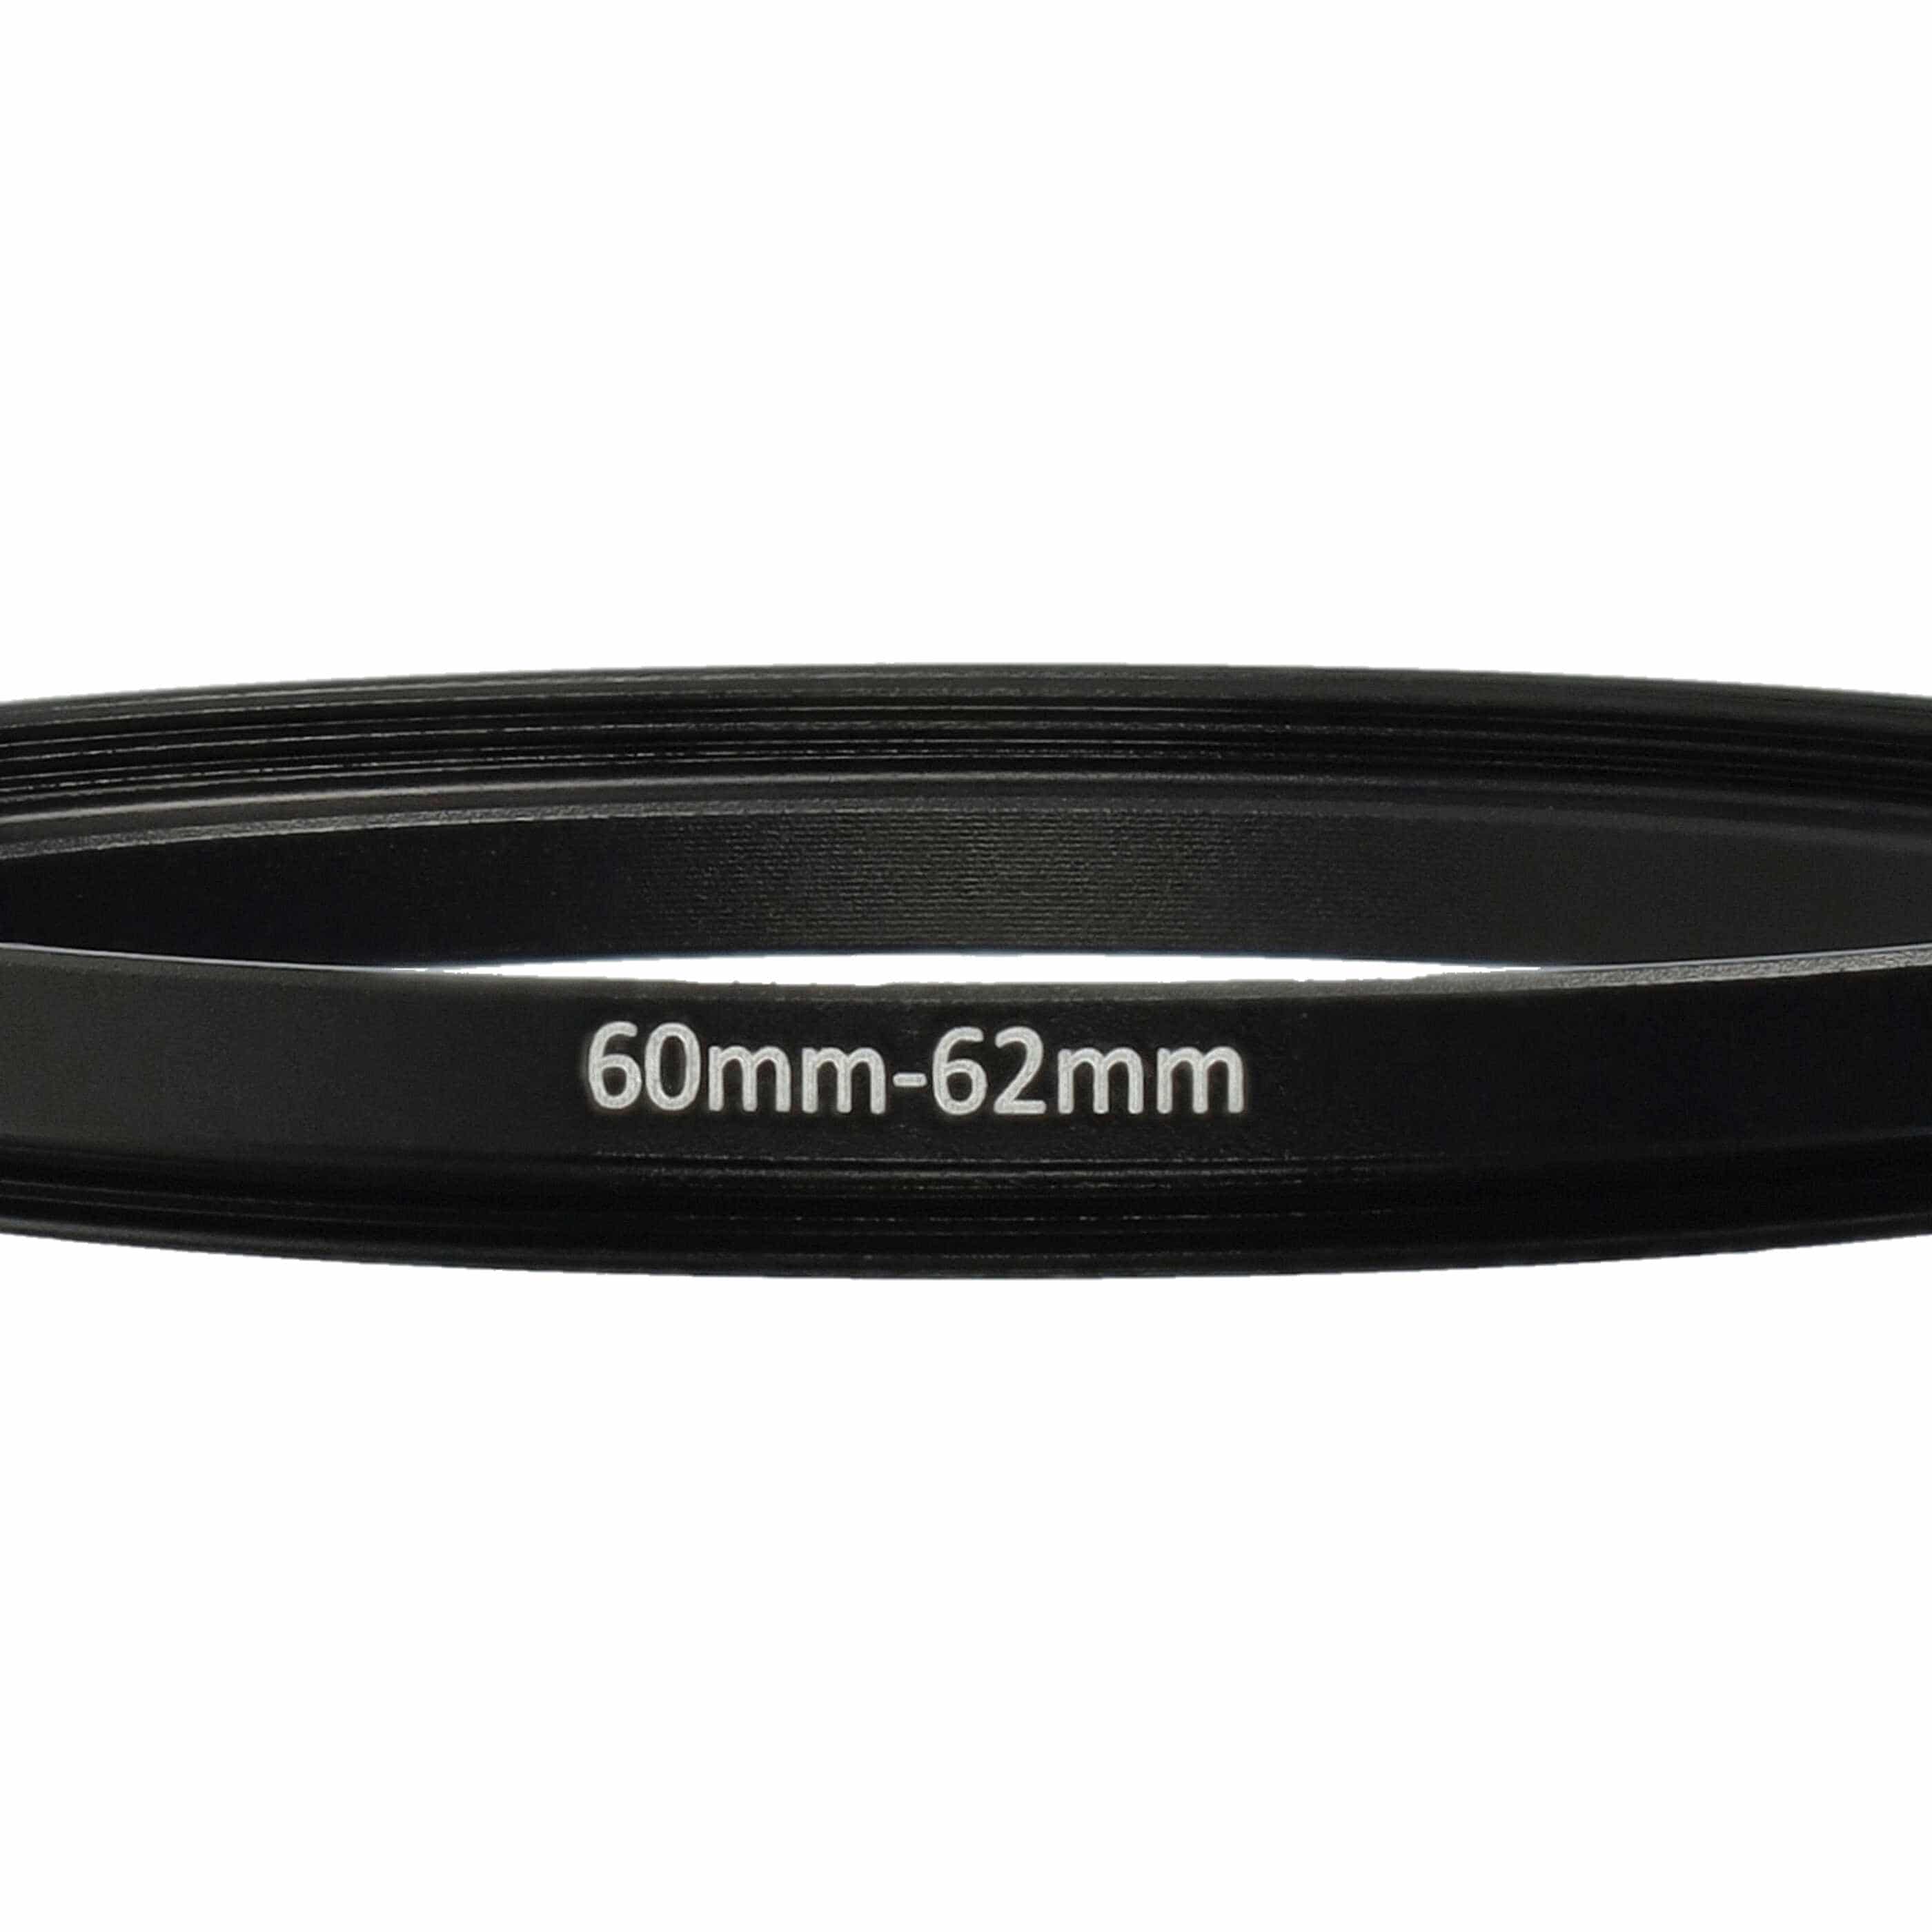 Step-Up-Ring Adapter 60 mm auf 62 mm passend für diverse Kamera-Objektive - Filteradapter